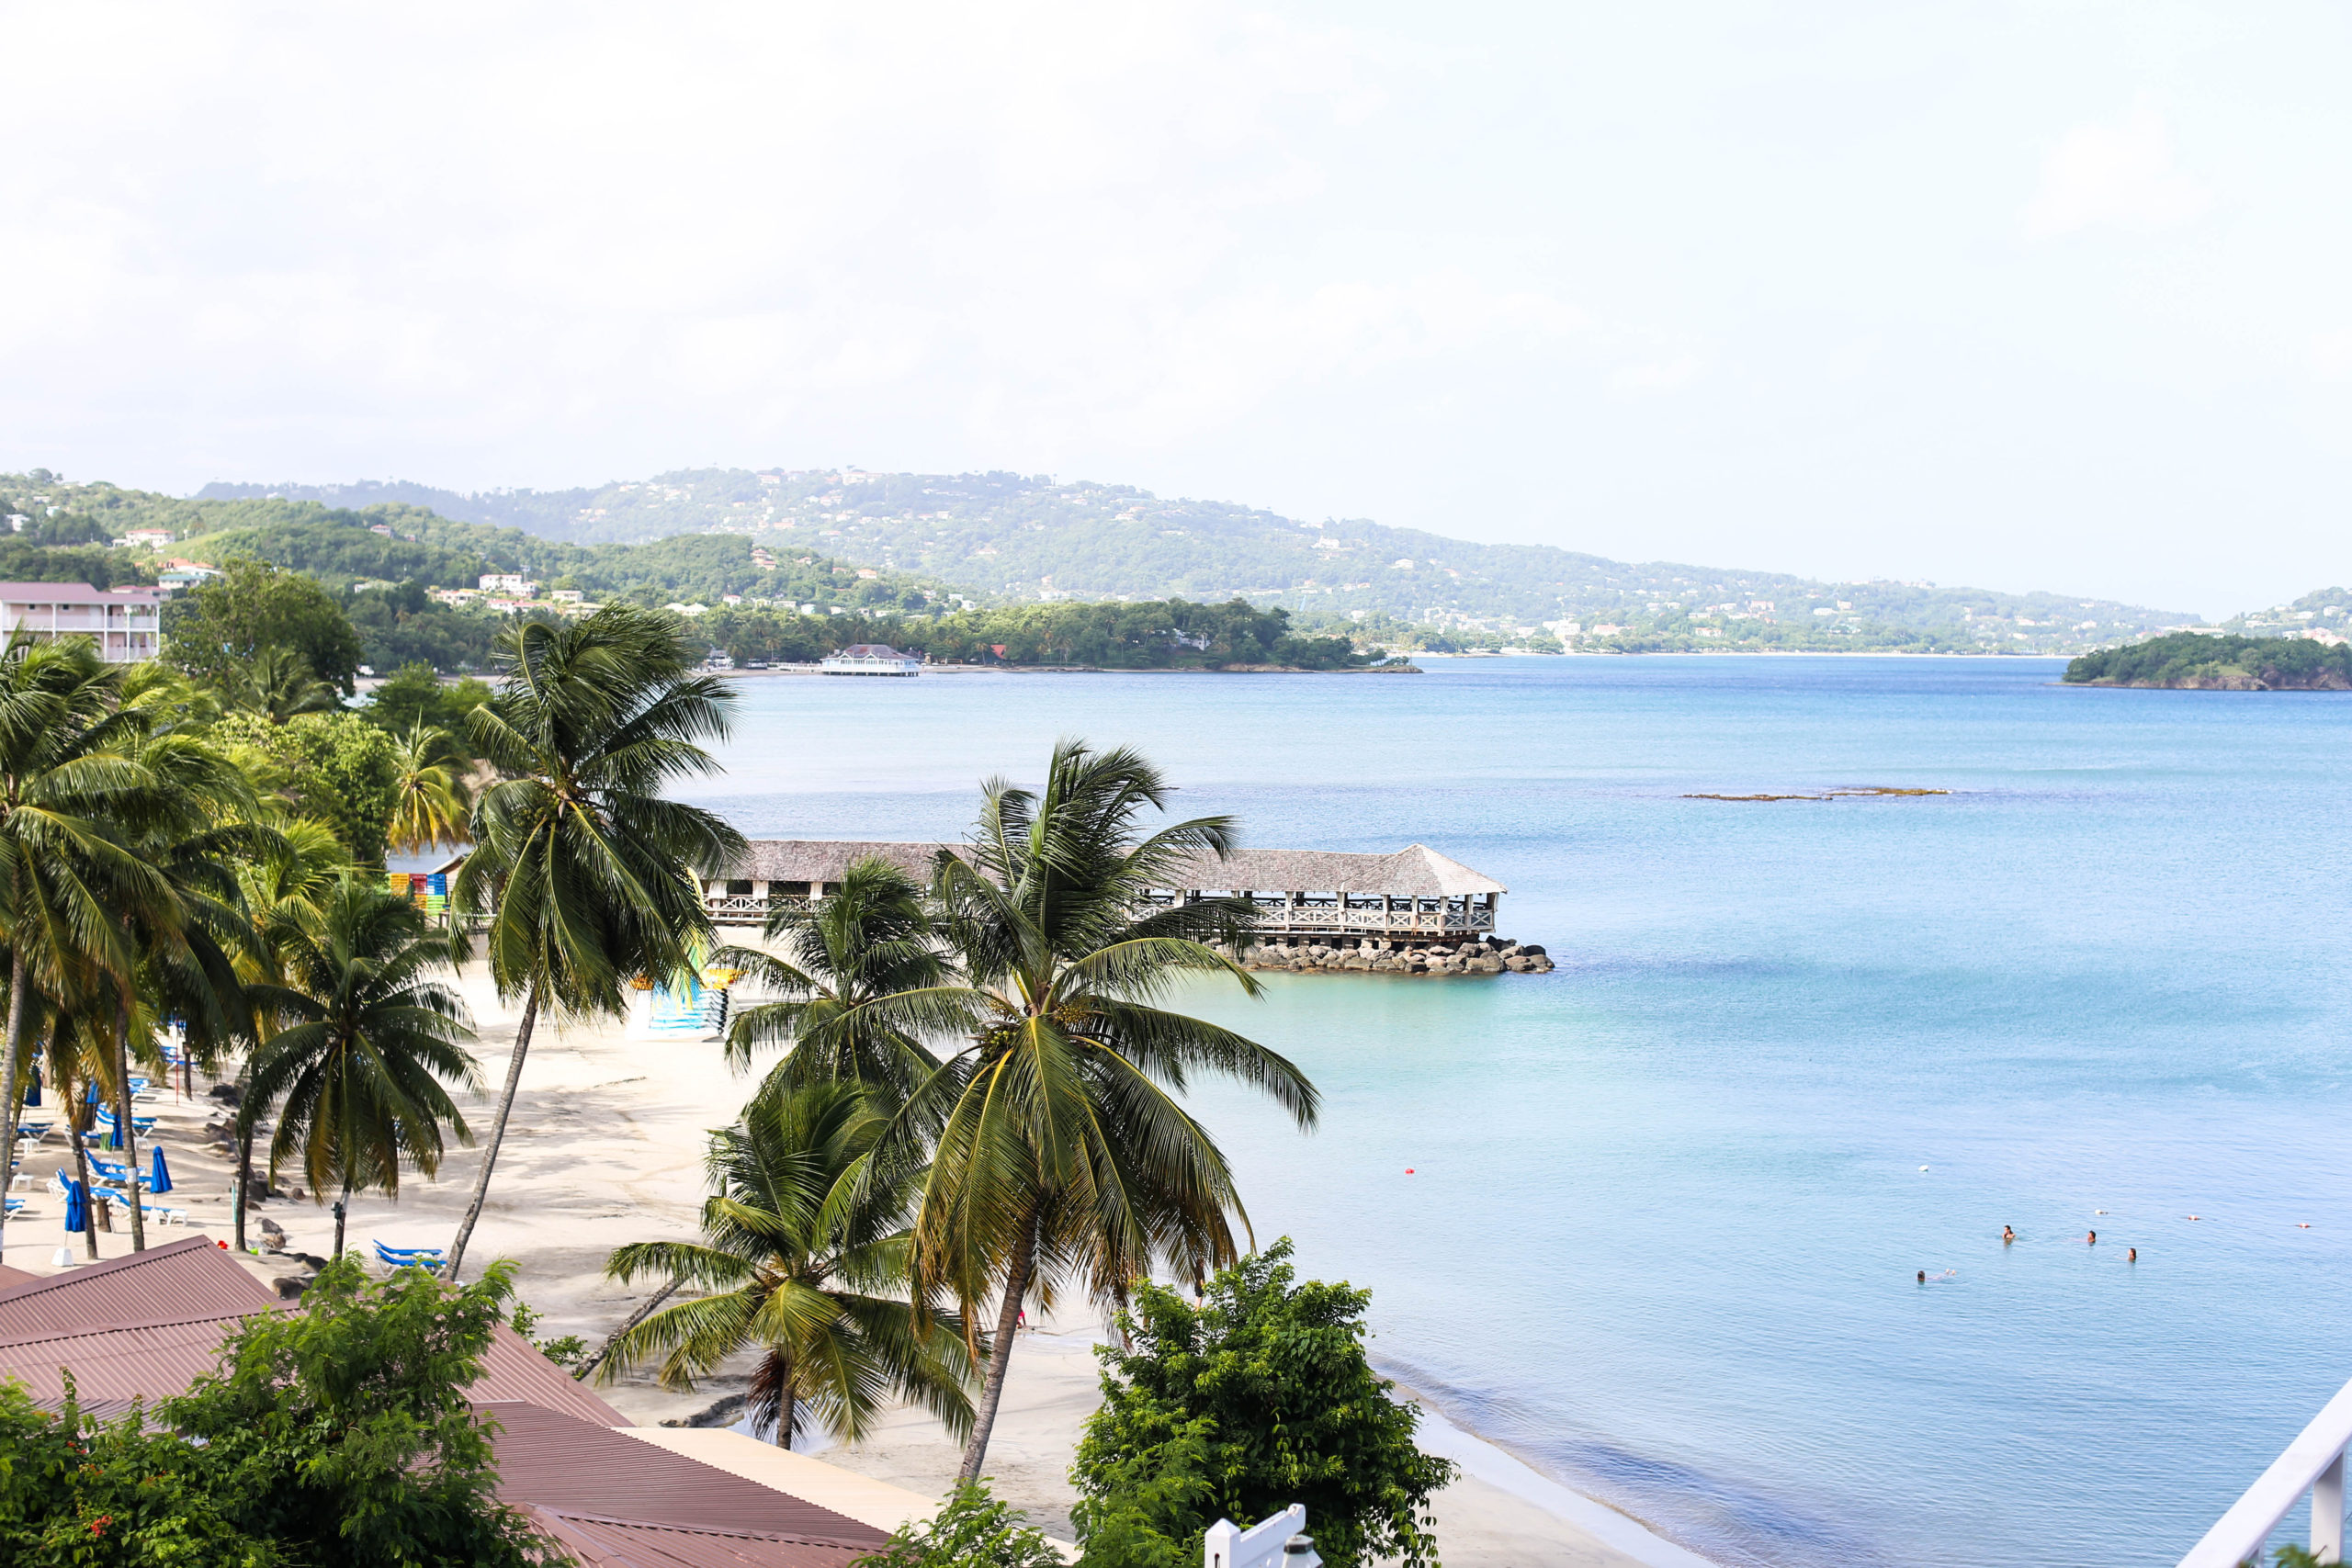 St. James Club Morgan Bay – St. Lucia Recap